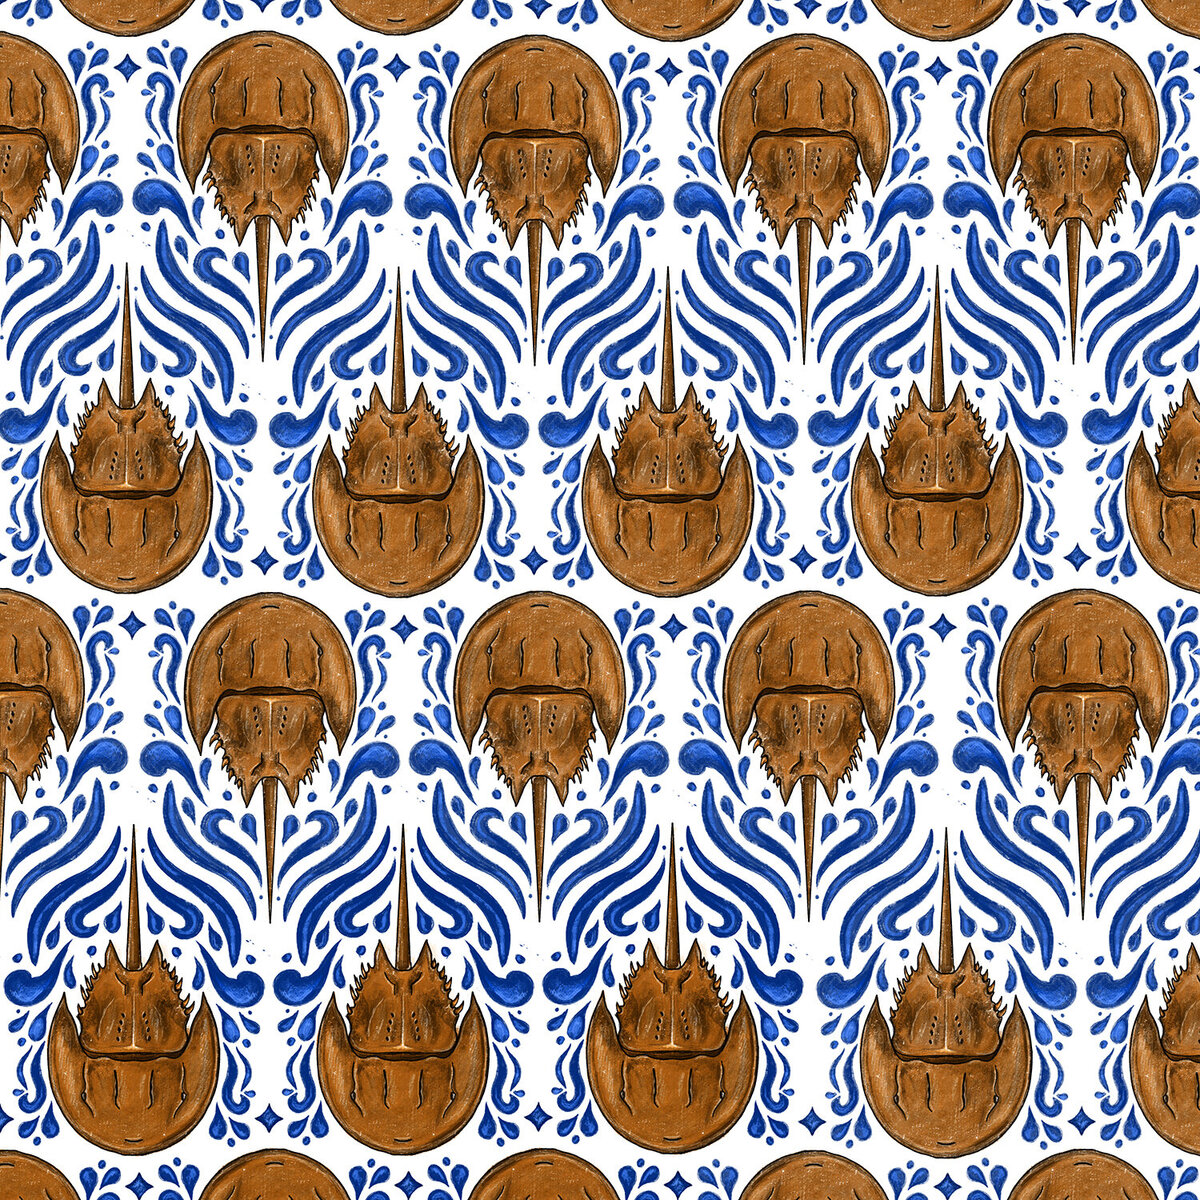 Horseshoe Crab Pattern small